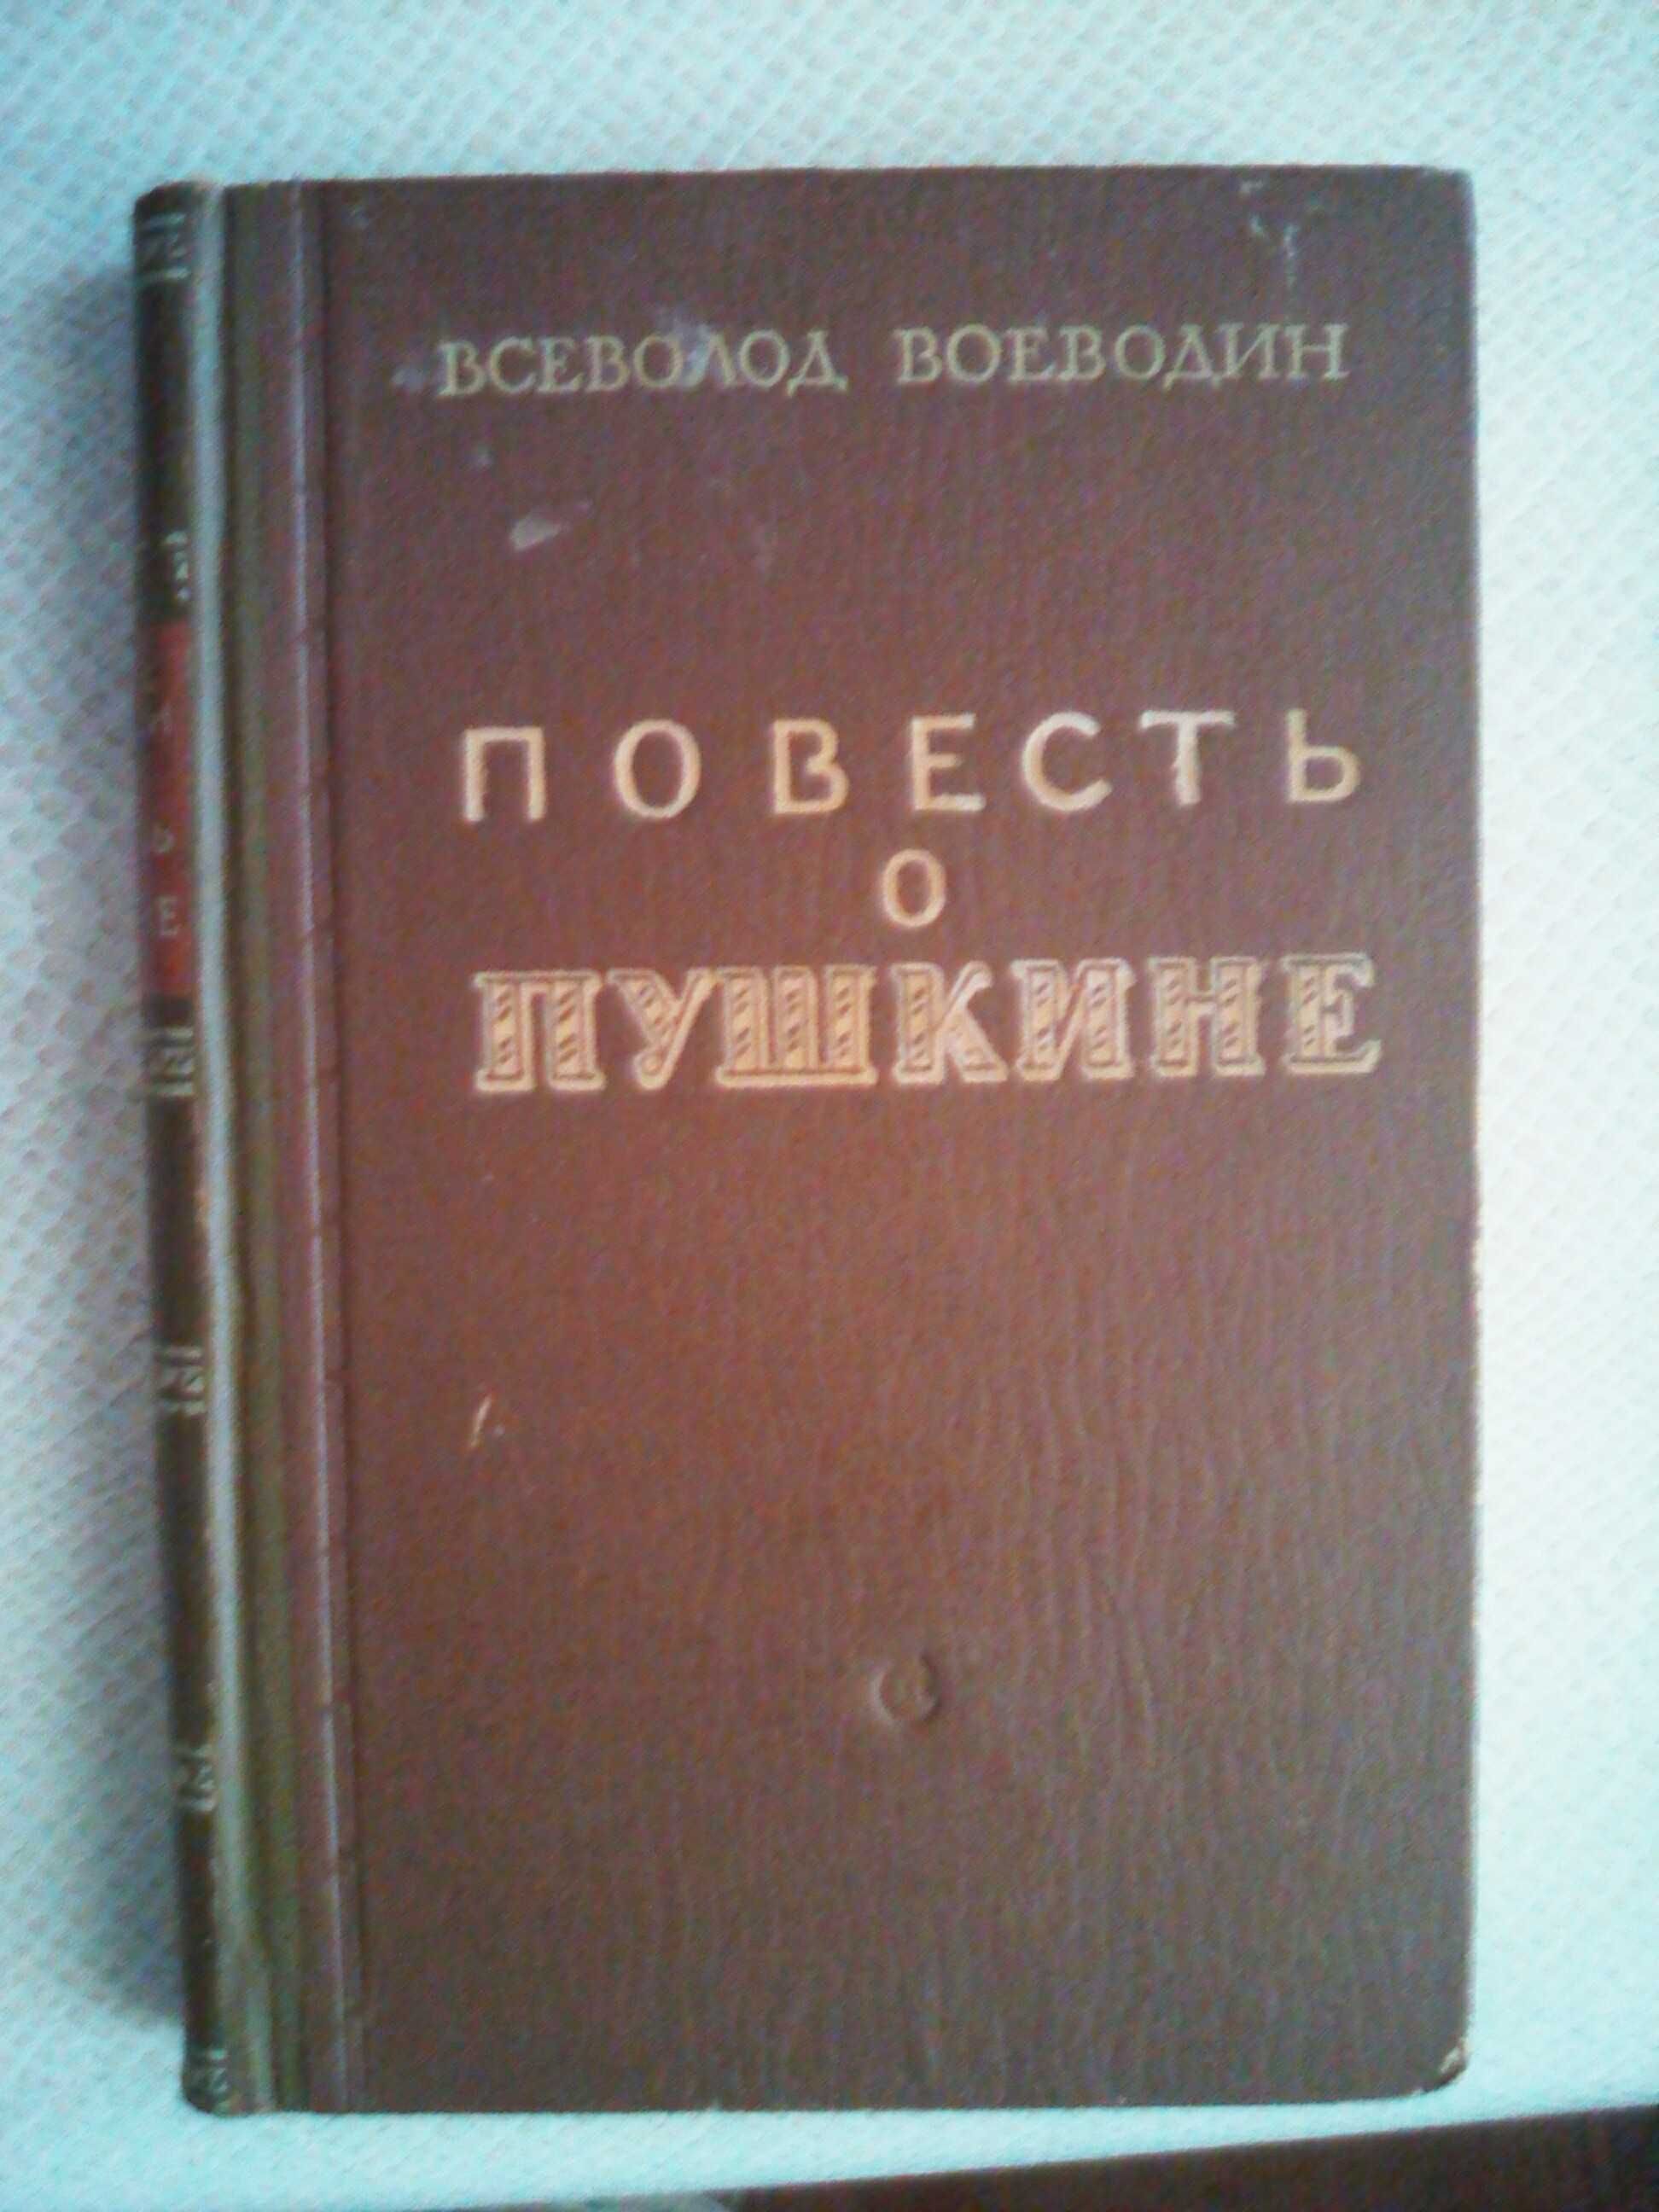 В.Воеводин,Повесть о Пушкине,1951г.